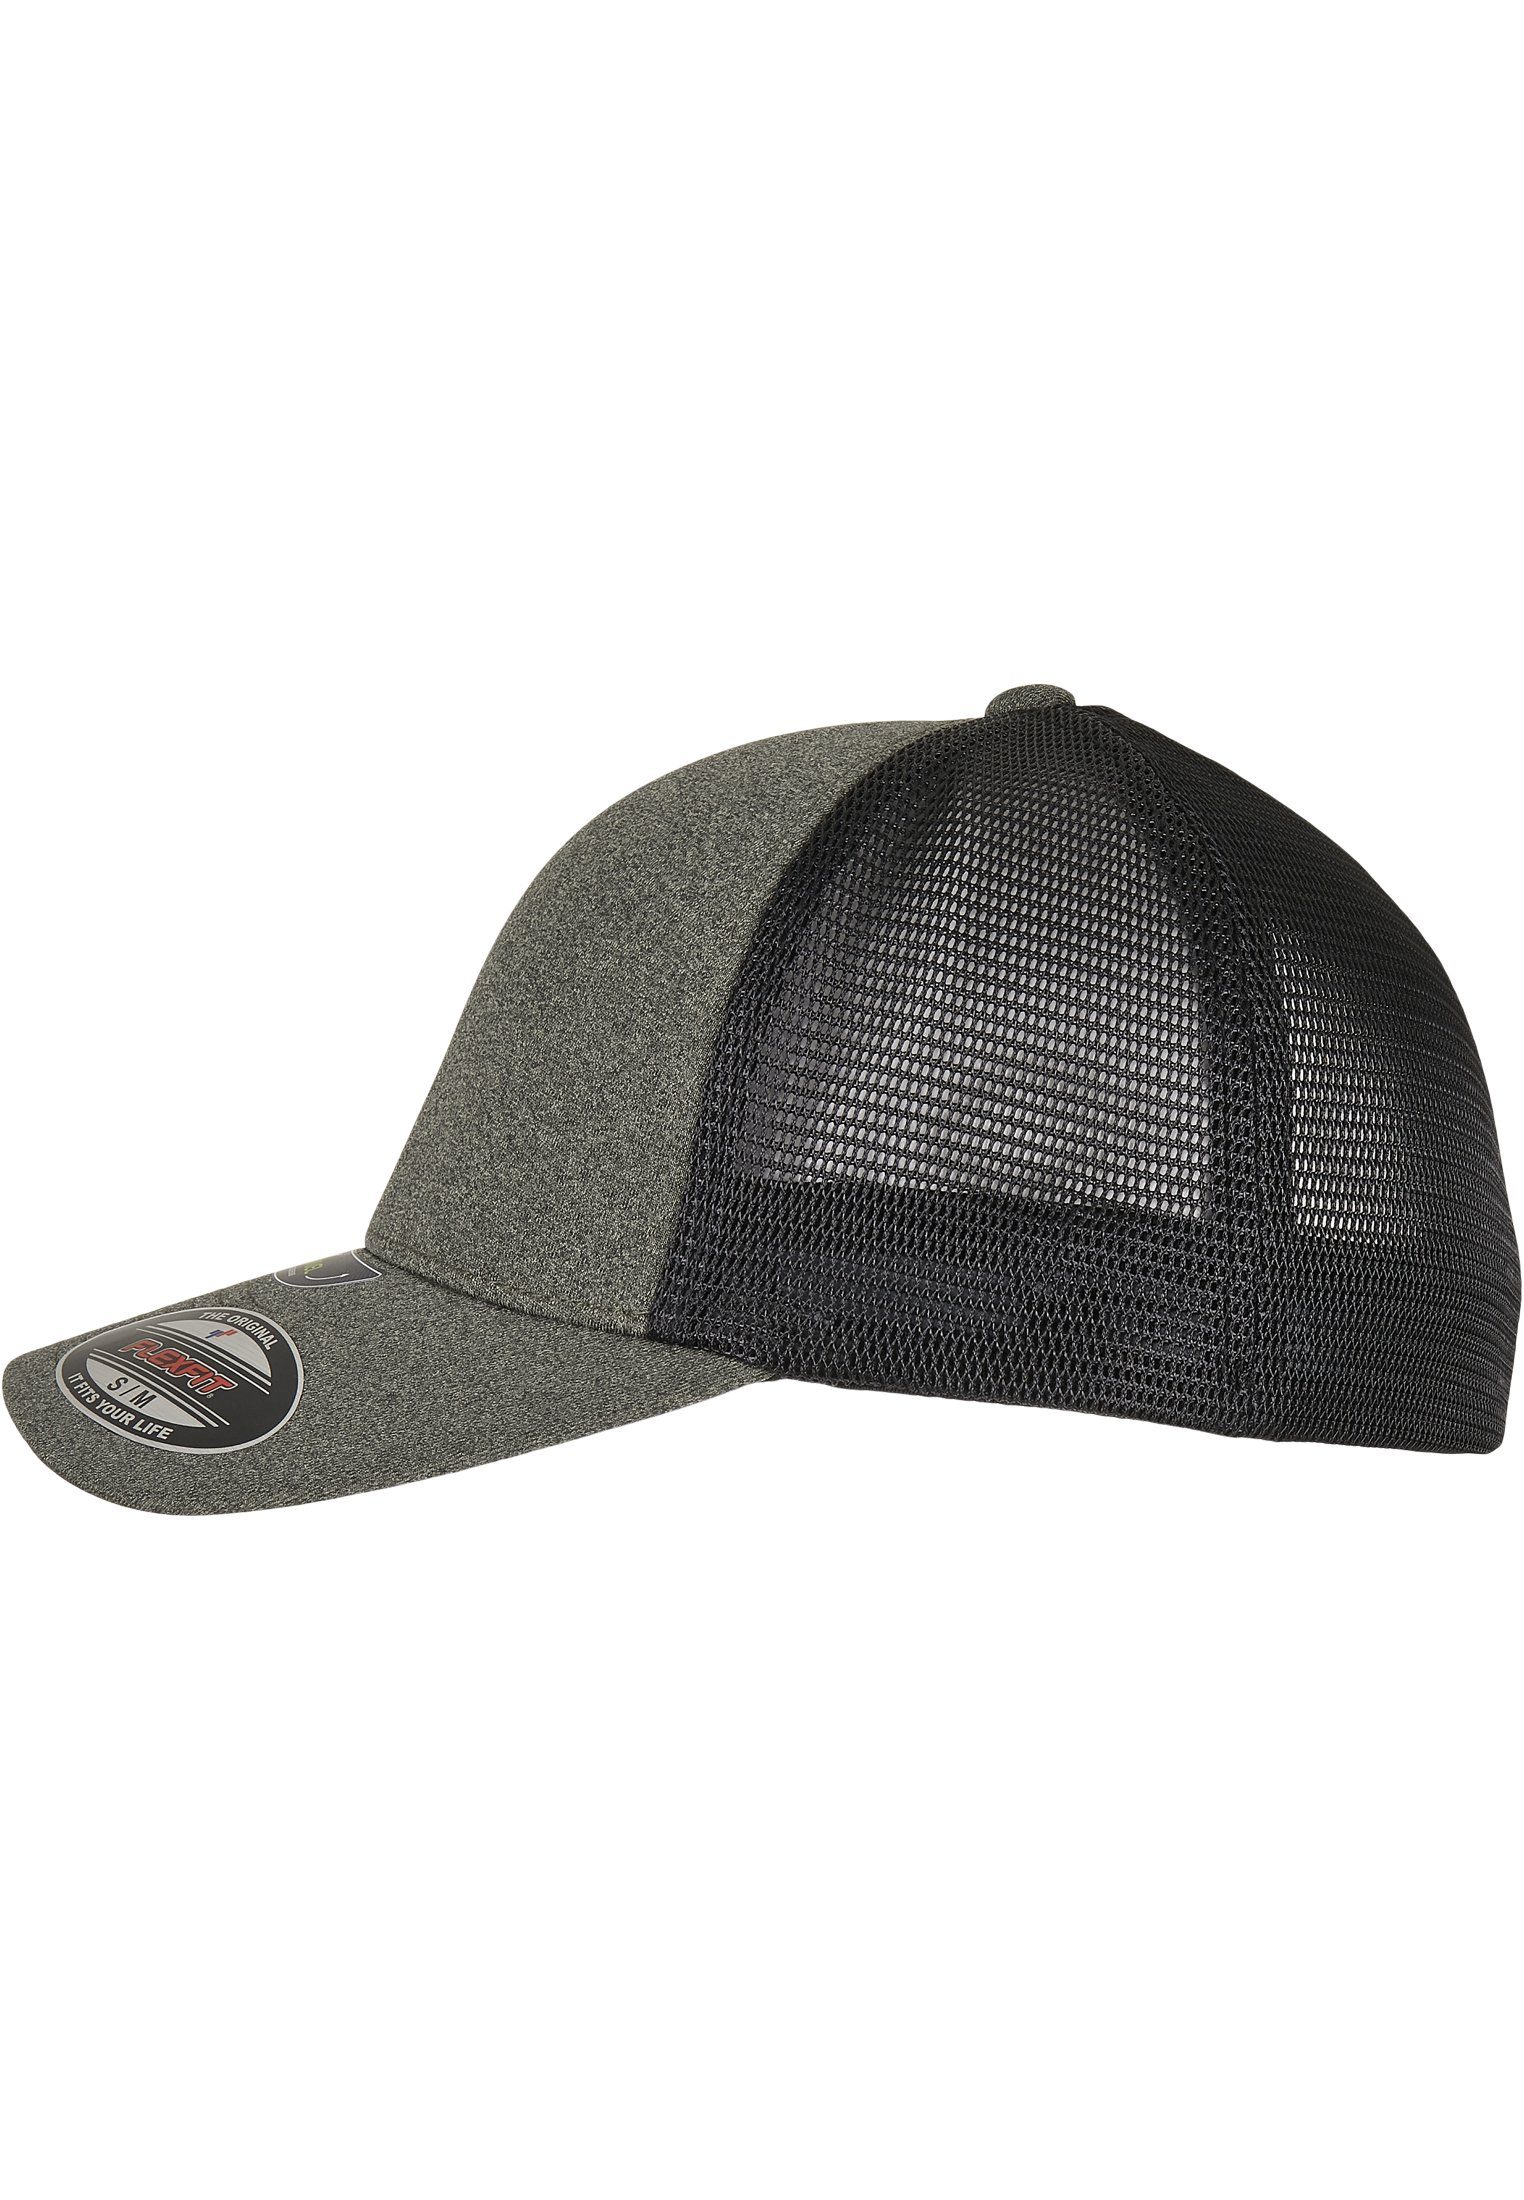 Flex Accessoires Cap olive/black UNIPANEL™ FLEXFIT Flexfit CAP